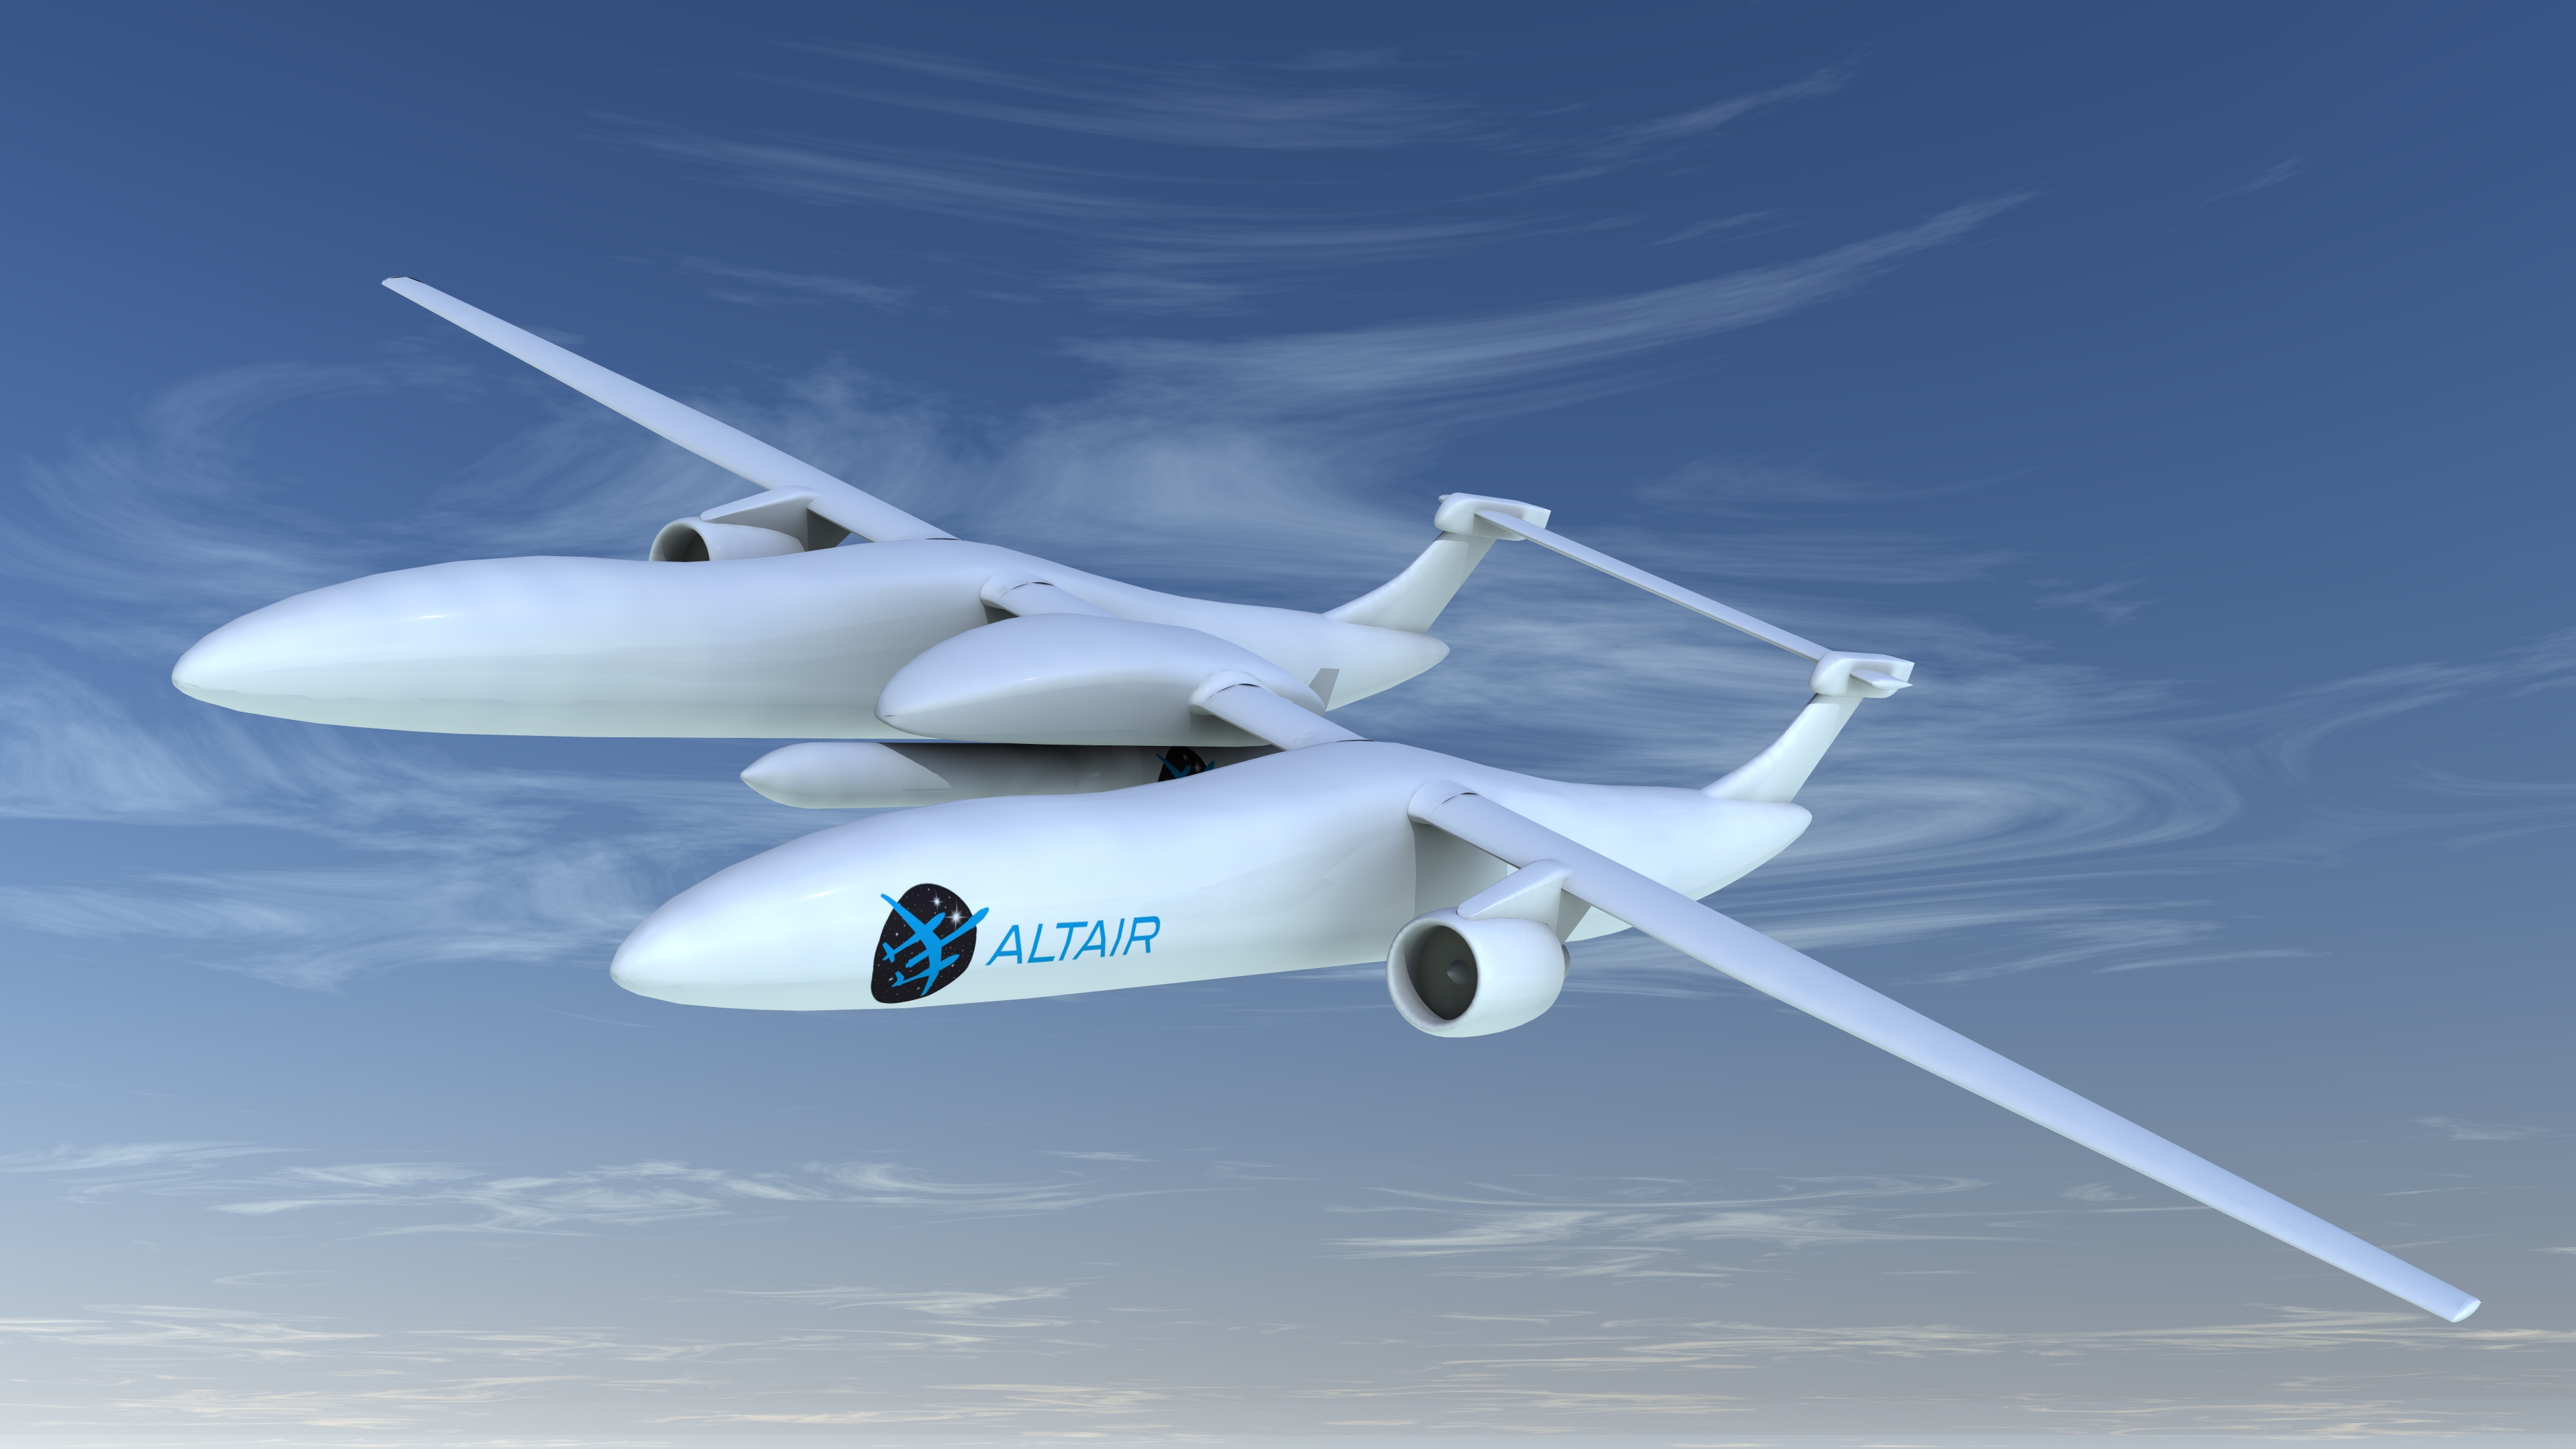 ALTAIR air-launch system. Nepřipomíná vám nosič Eole jistý SpaceShipTwo od Virgin Galactic? 